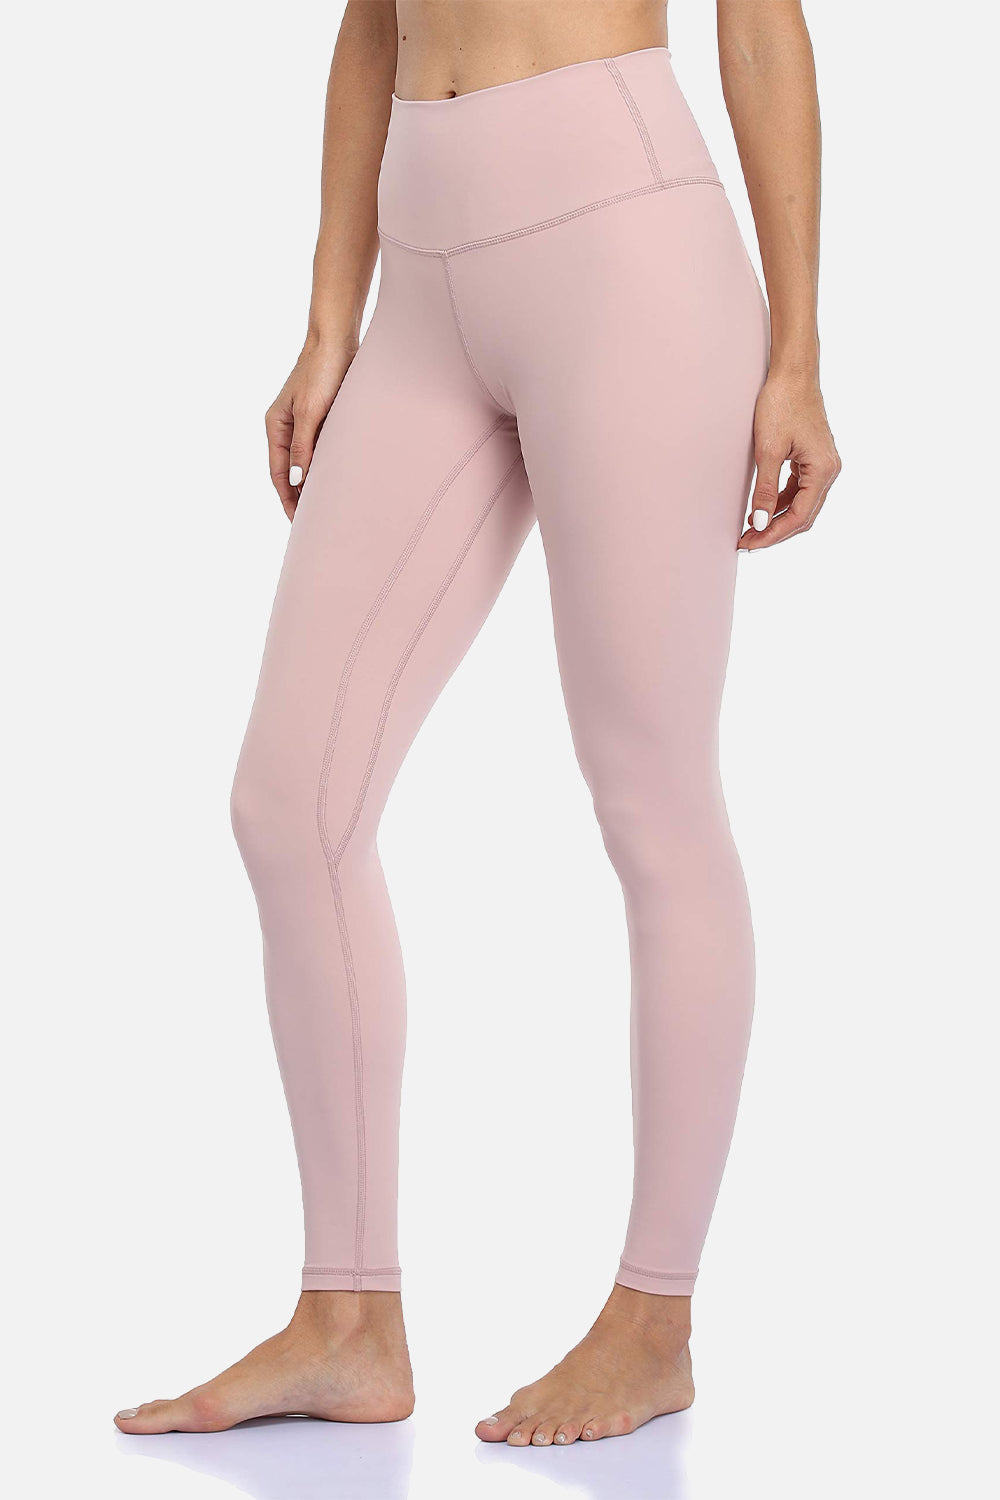 Colorfulkoala Womens Buttery Soft High Waisted Yoga Pants 78 Length  Leggings (Xl